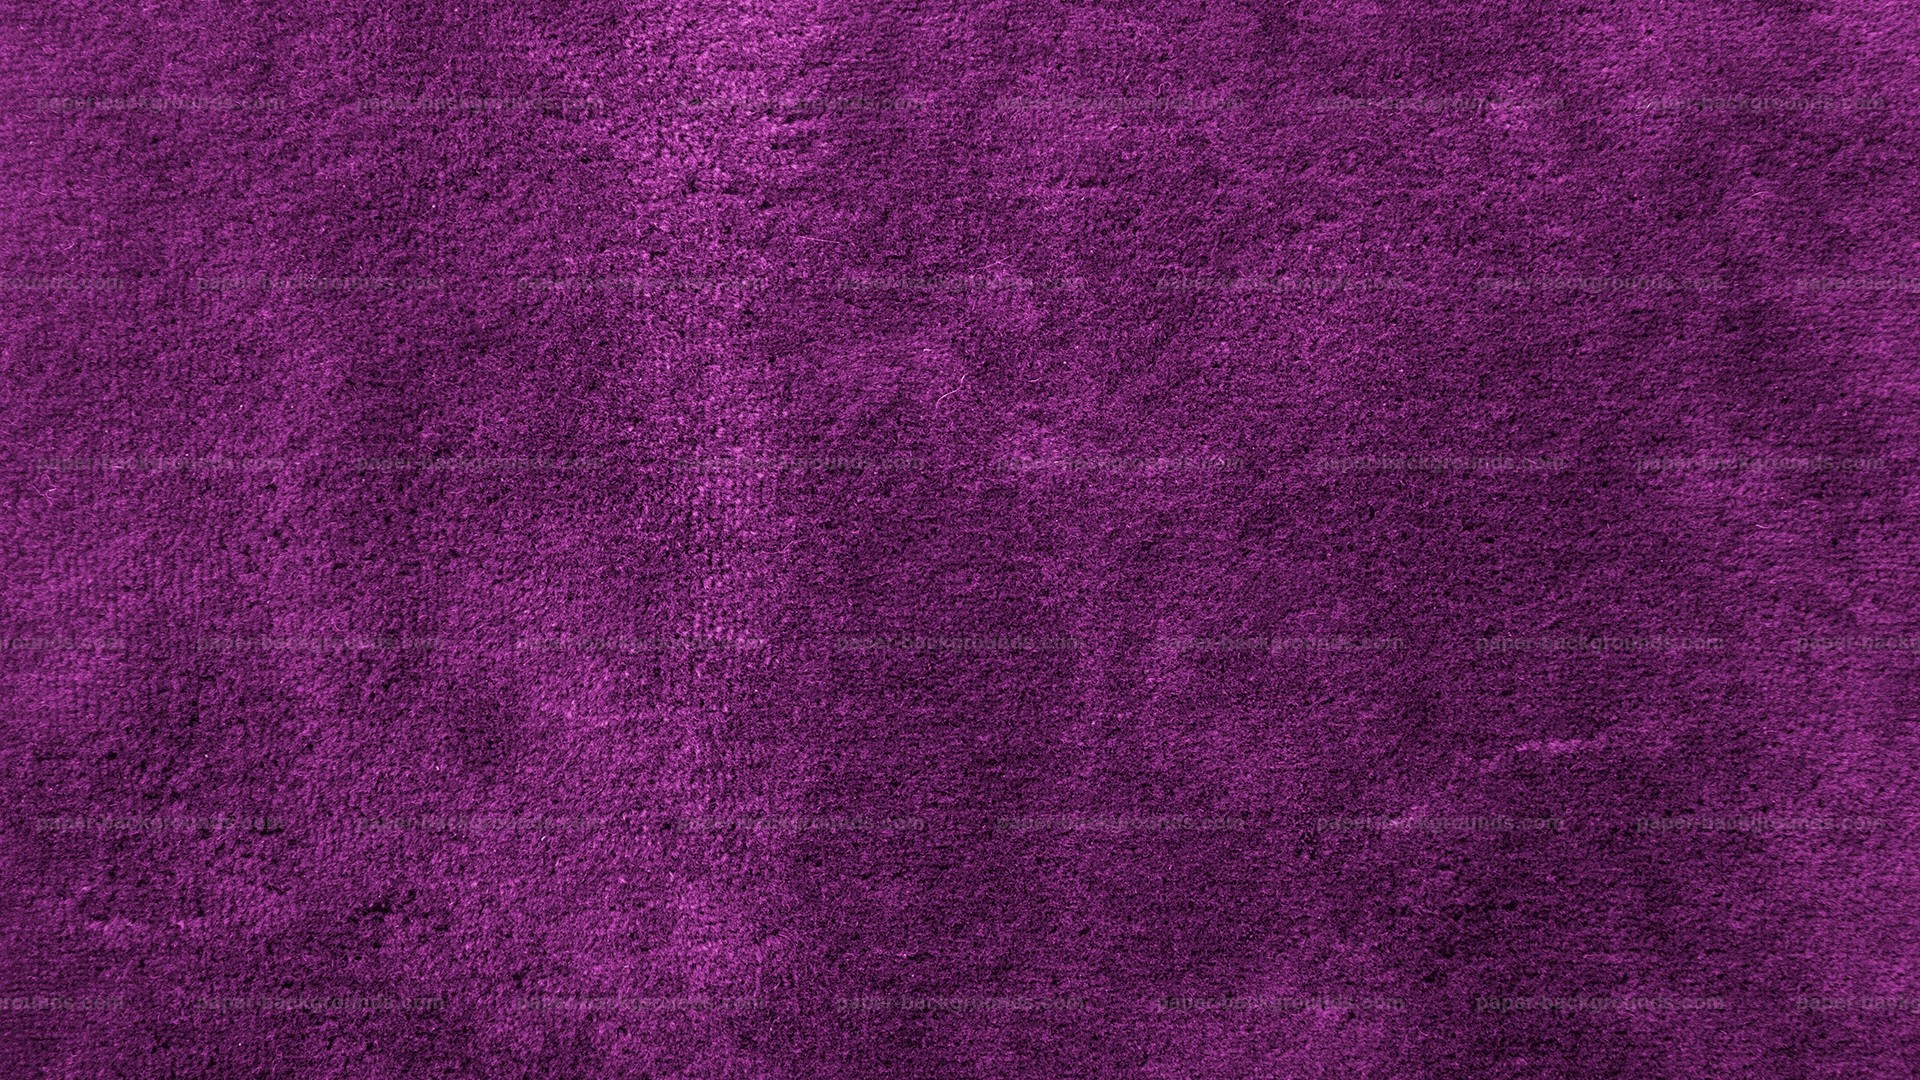 1920x1080 Purple Velvet Texture Wallpapers